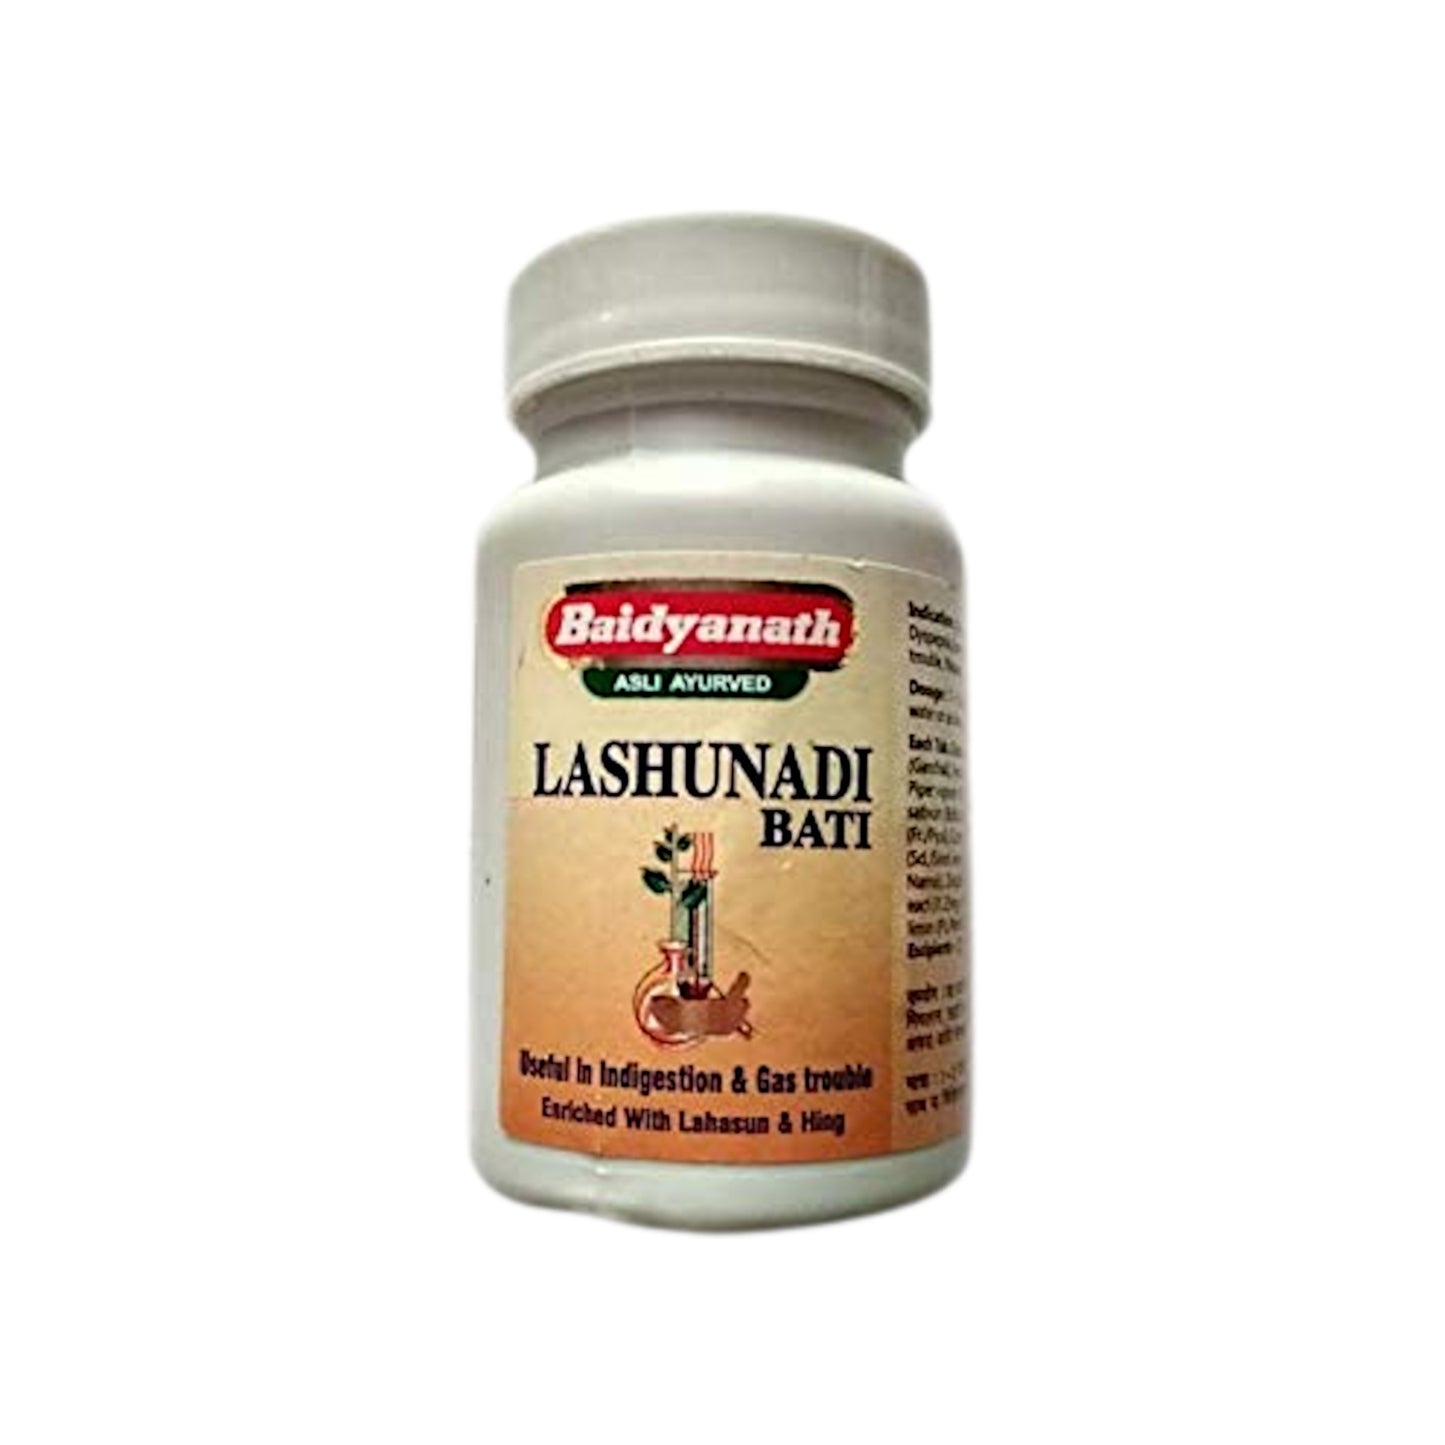 Baidyanath - Lashunadi Bati 40 Tablets